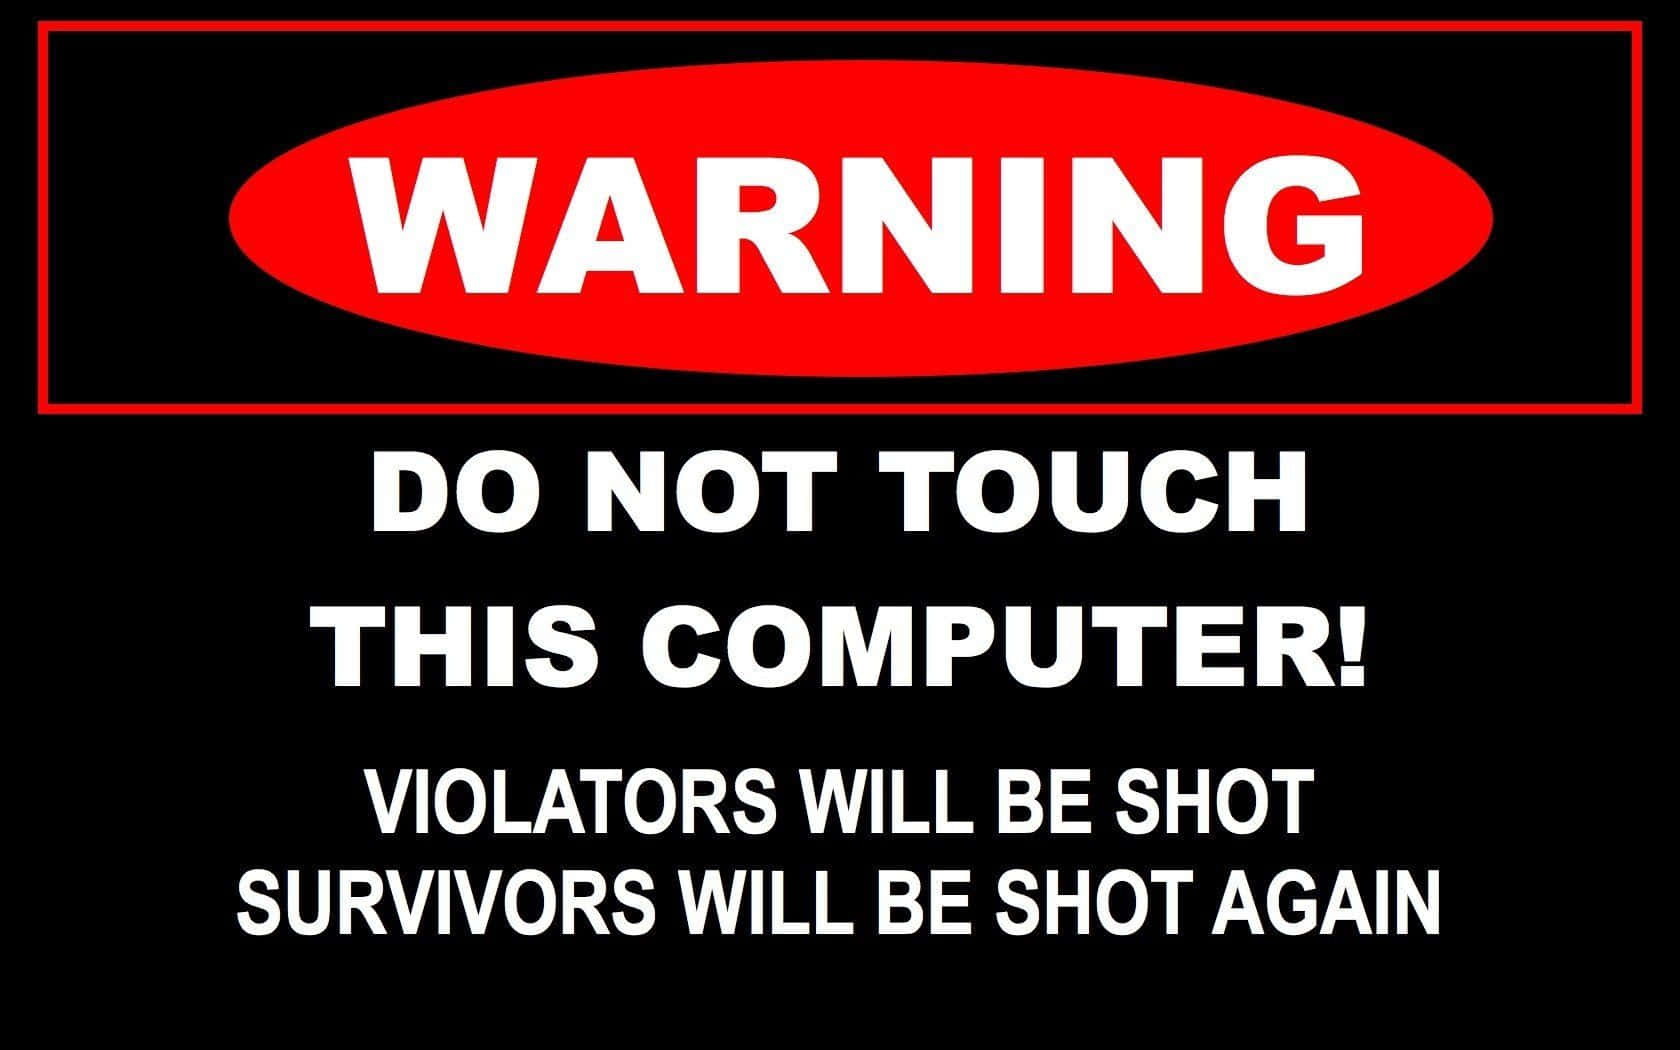 Berührensie Diesen Computer Nicht - Warnung! Wallpaper